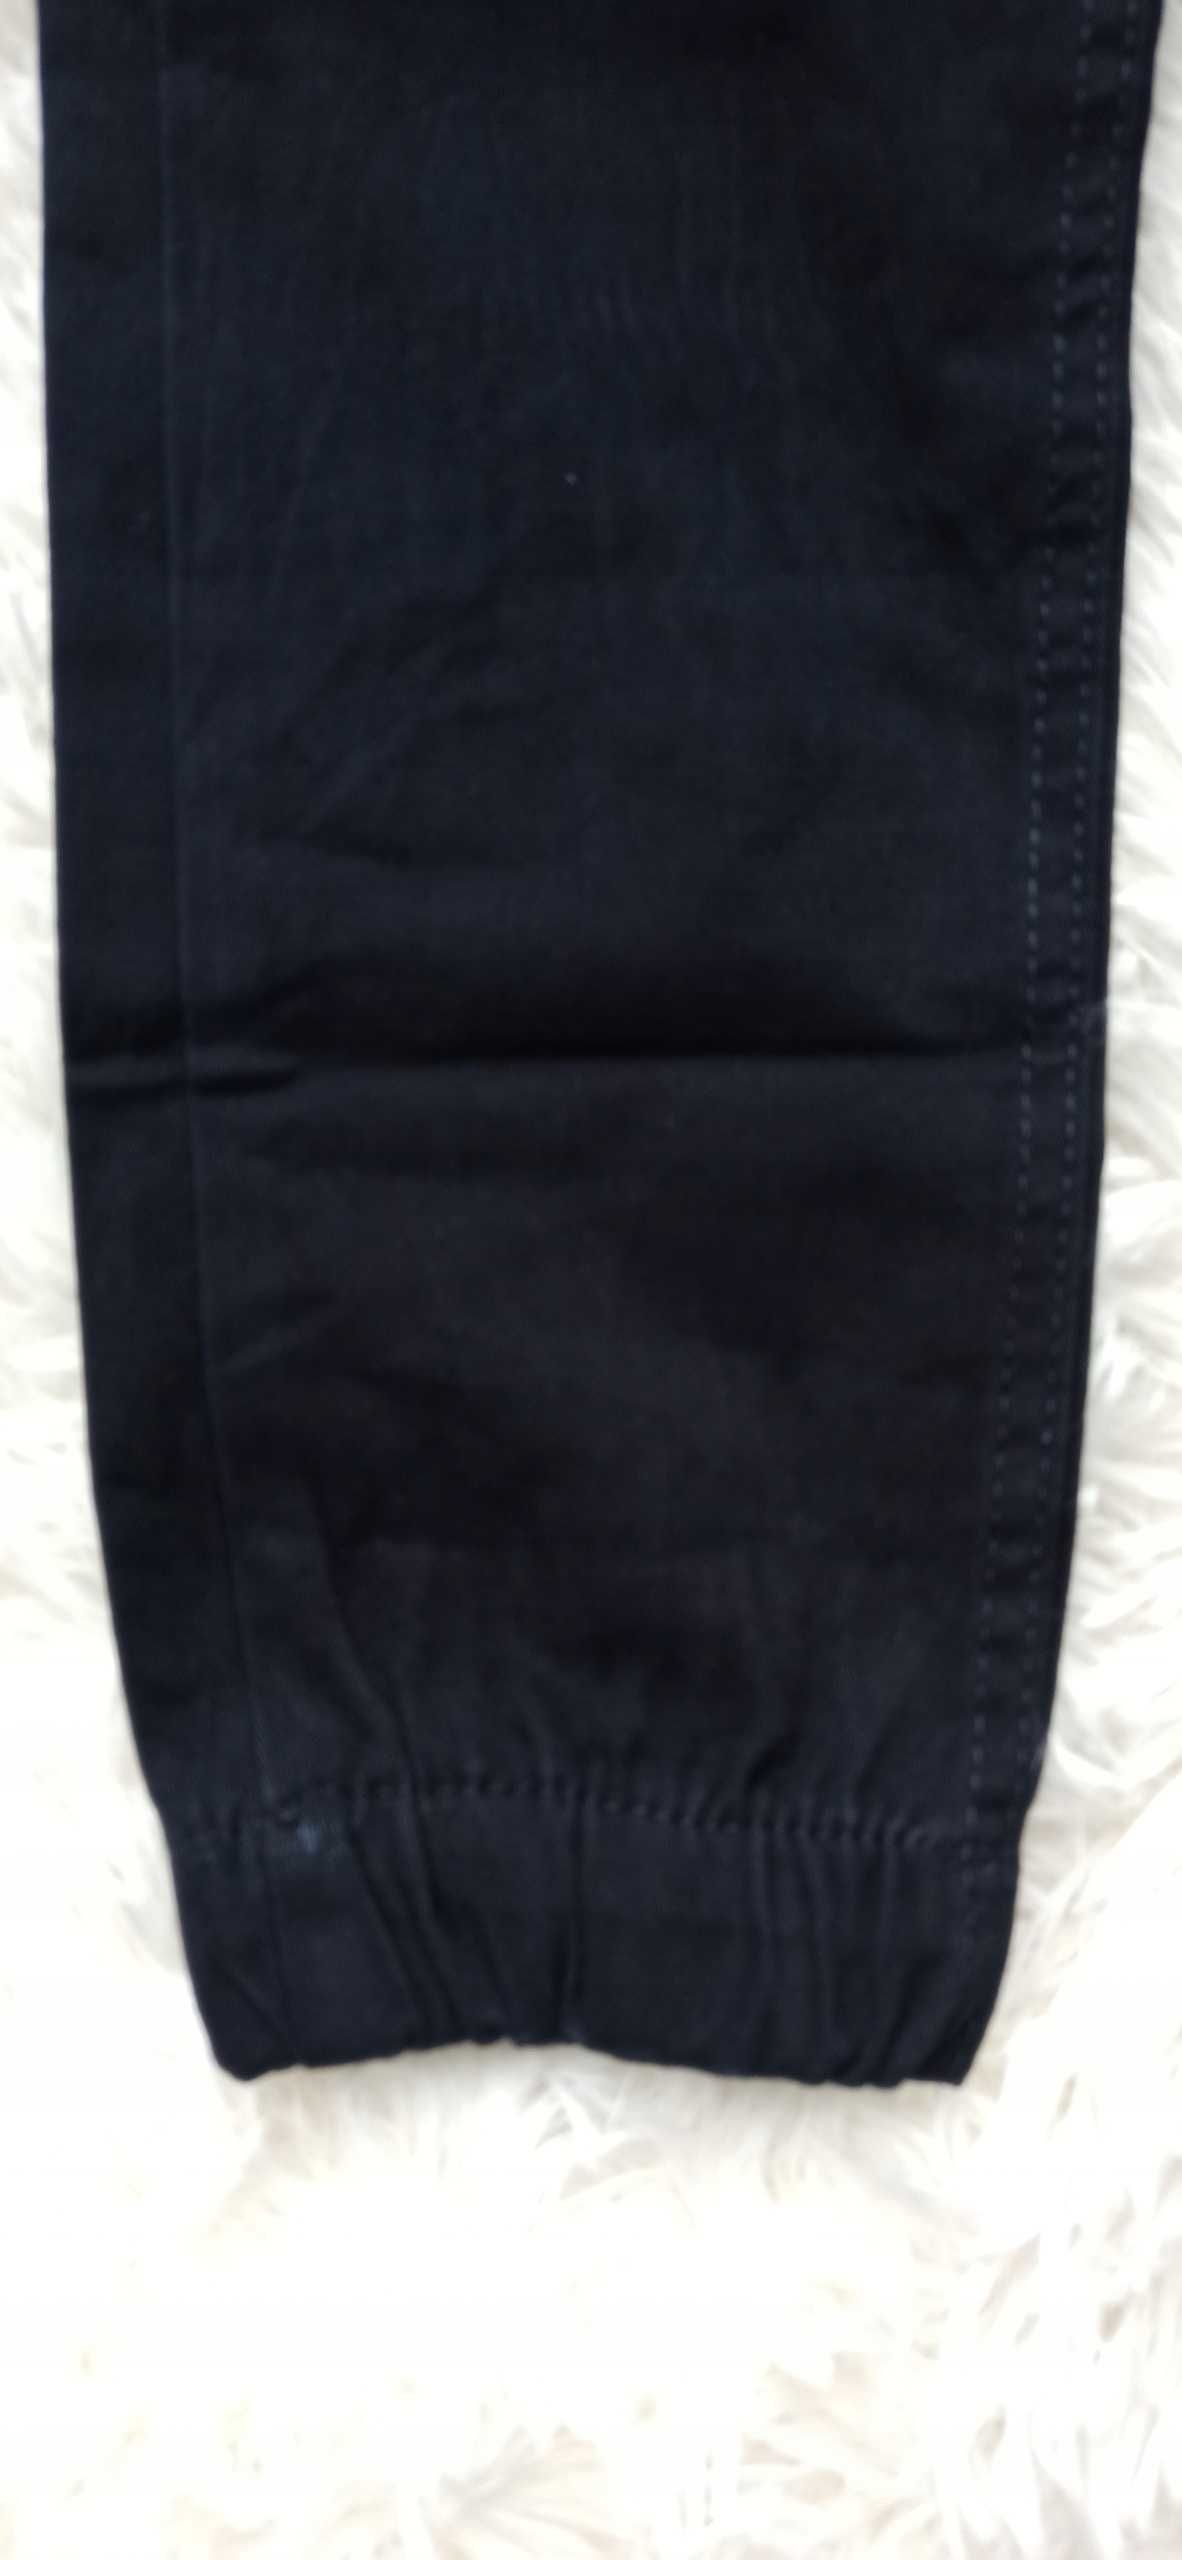 Spodnie czarne dla chłopca bawełna nowy rr.,158-164